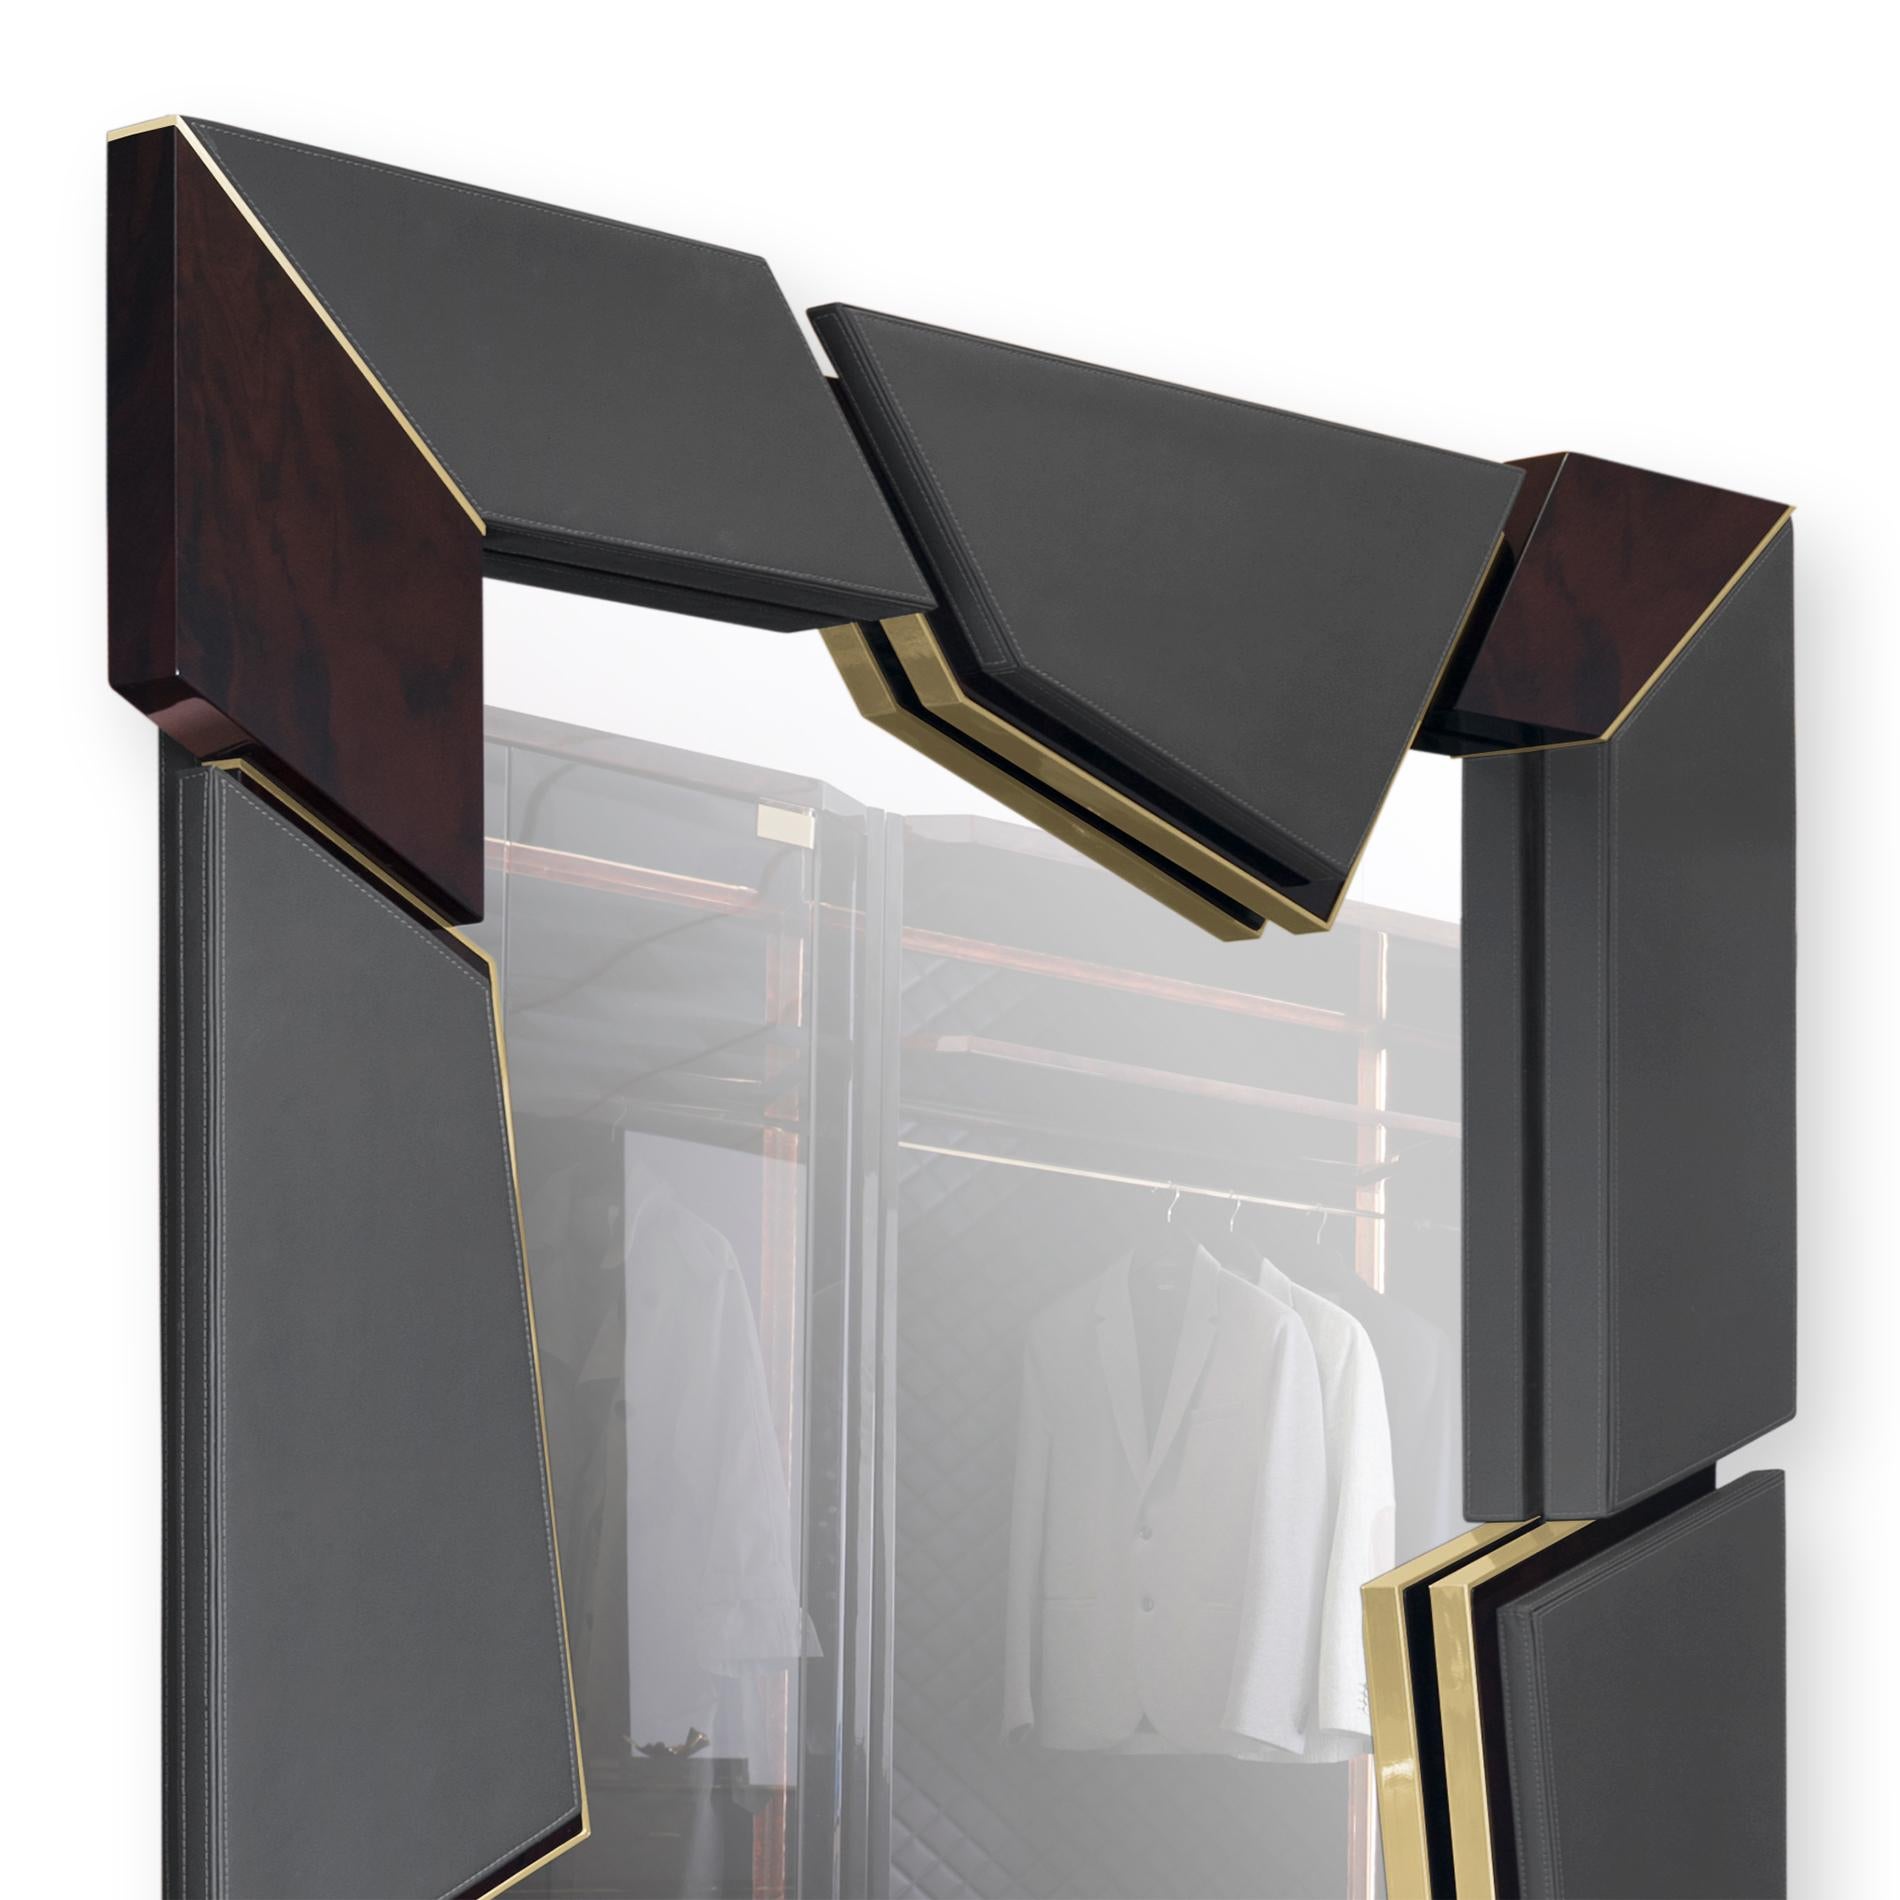 Lupus miroir avec structure de racines en noyer massif,
avec miroir en verre et cadre en laiton massif poli.
Structure du cadre rembourrée et recouverte de
cuir gris véritable.